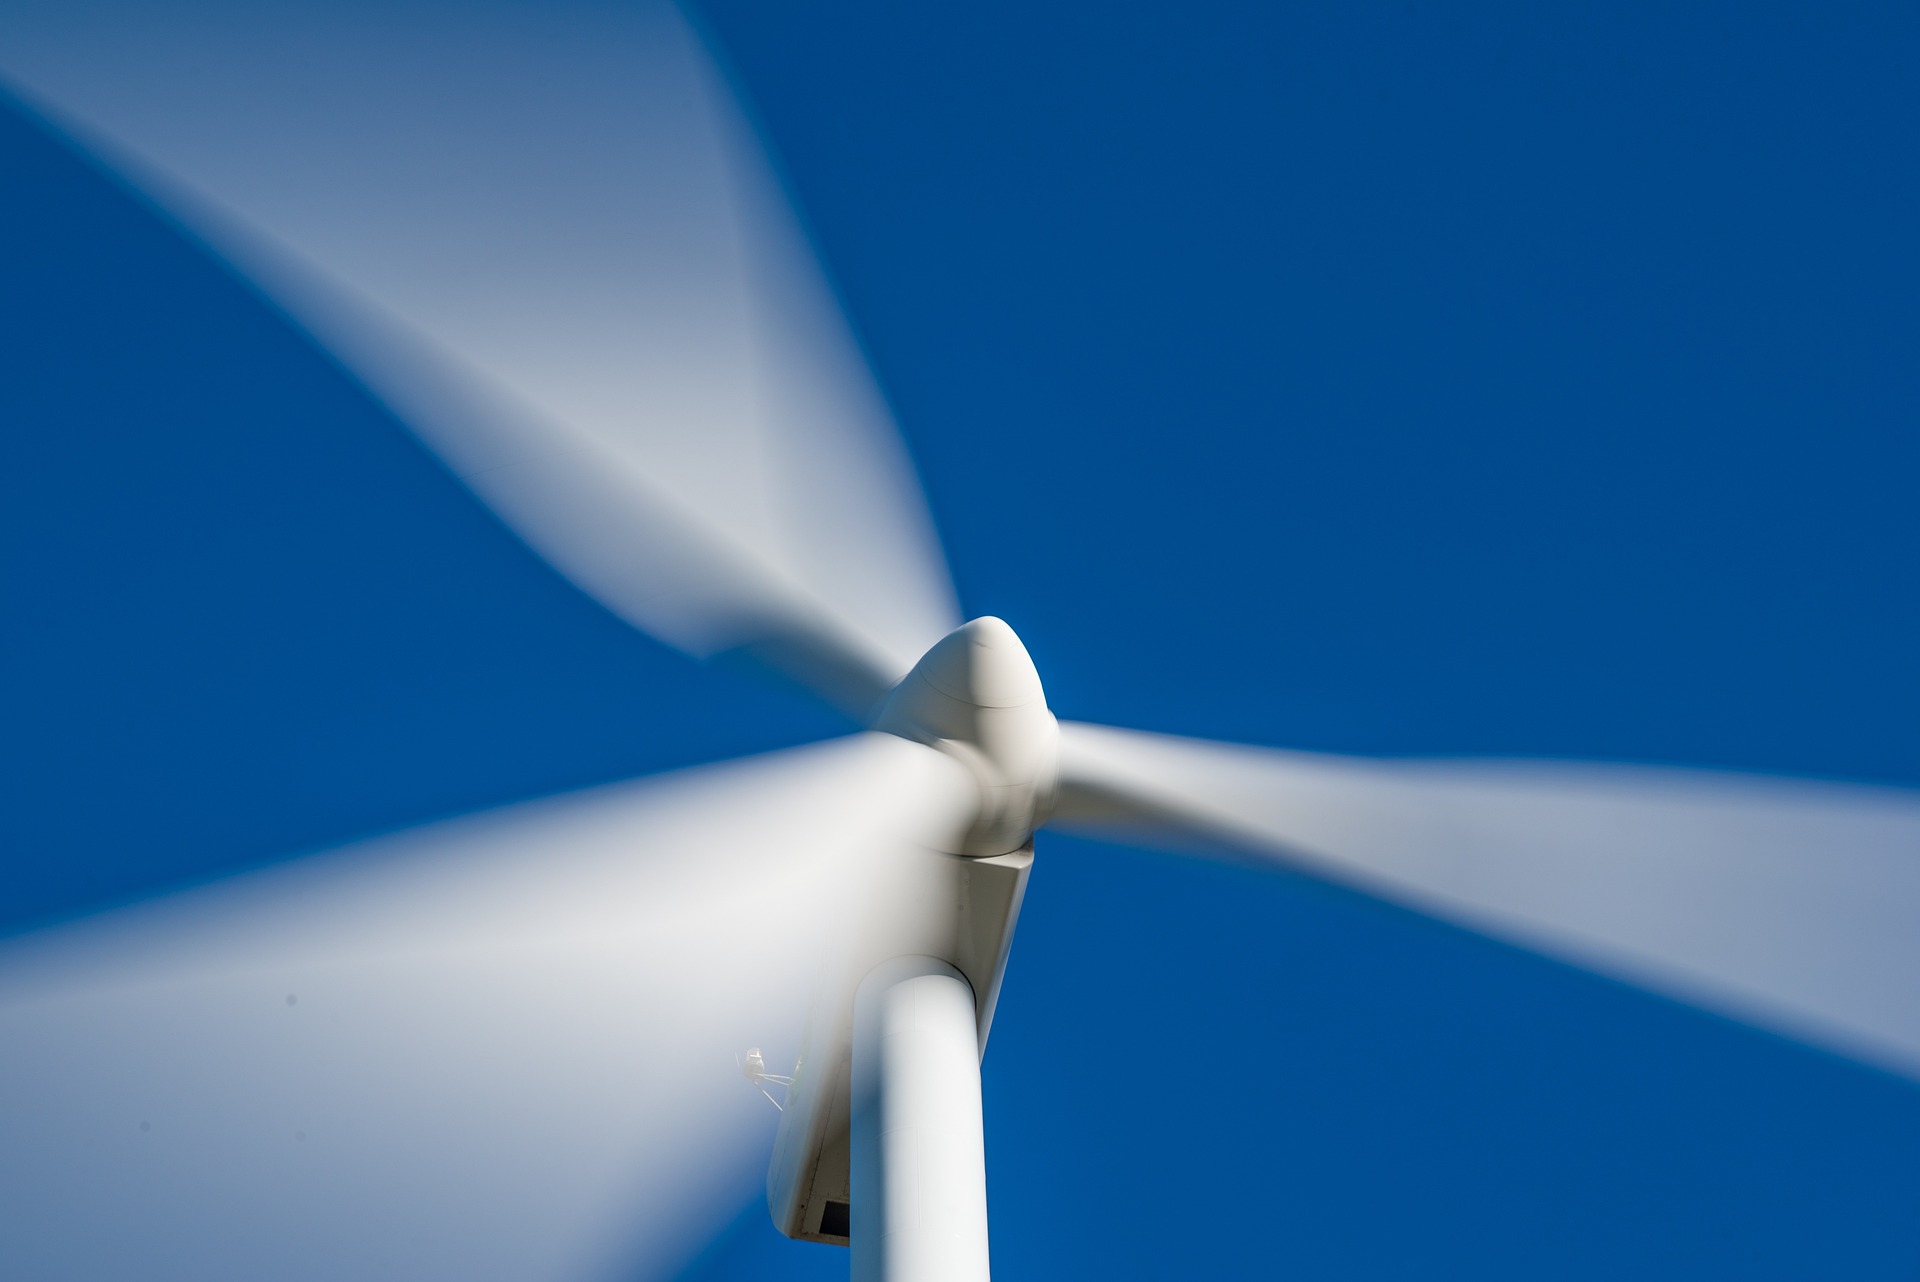 Demanda por metais de transição quintuplicará até 2050, mas oferta é limitada. Na imagem: Pás de turbina eólica em movimento (Foto: Jose Antonio Alba/Pixabay)